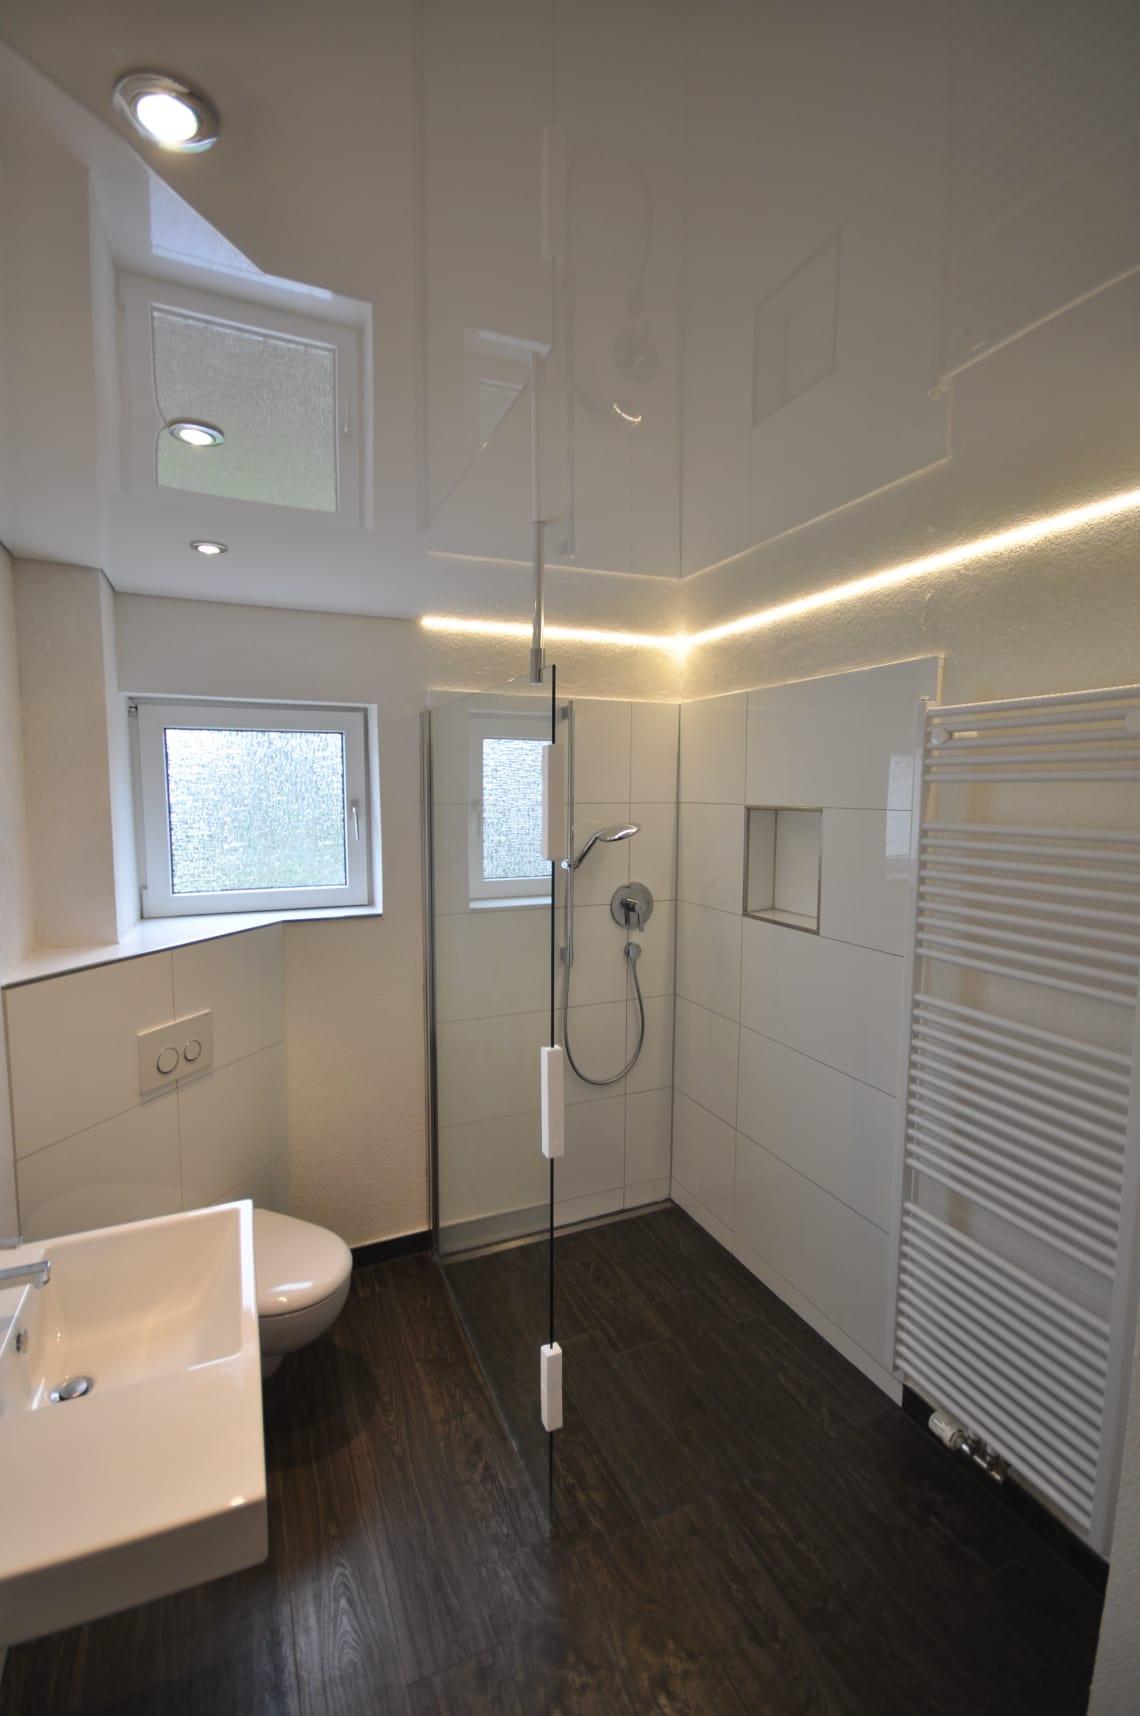 Lackspanndecke im Bad in weiss Hochglanz mit LED Einbaustrahler und LED Lichtkanal in der Schattenfuge in der Dusche